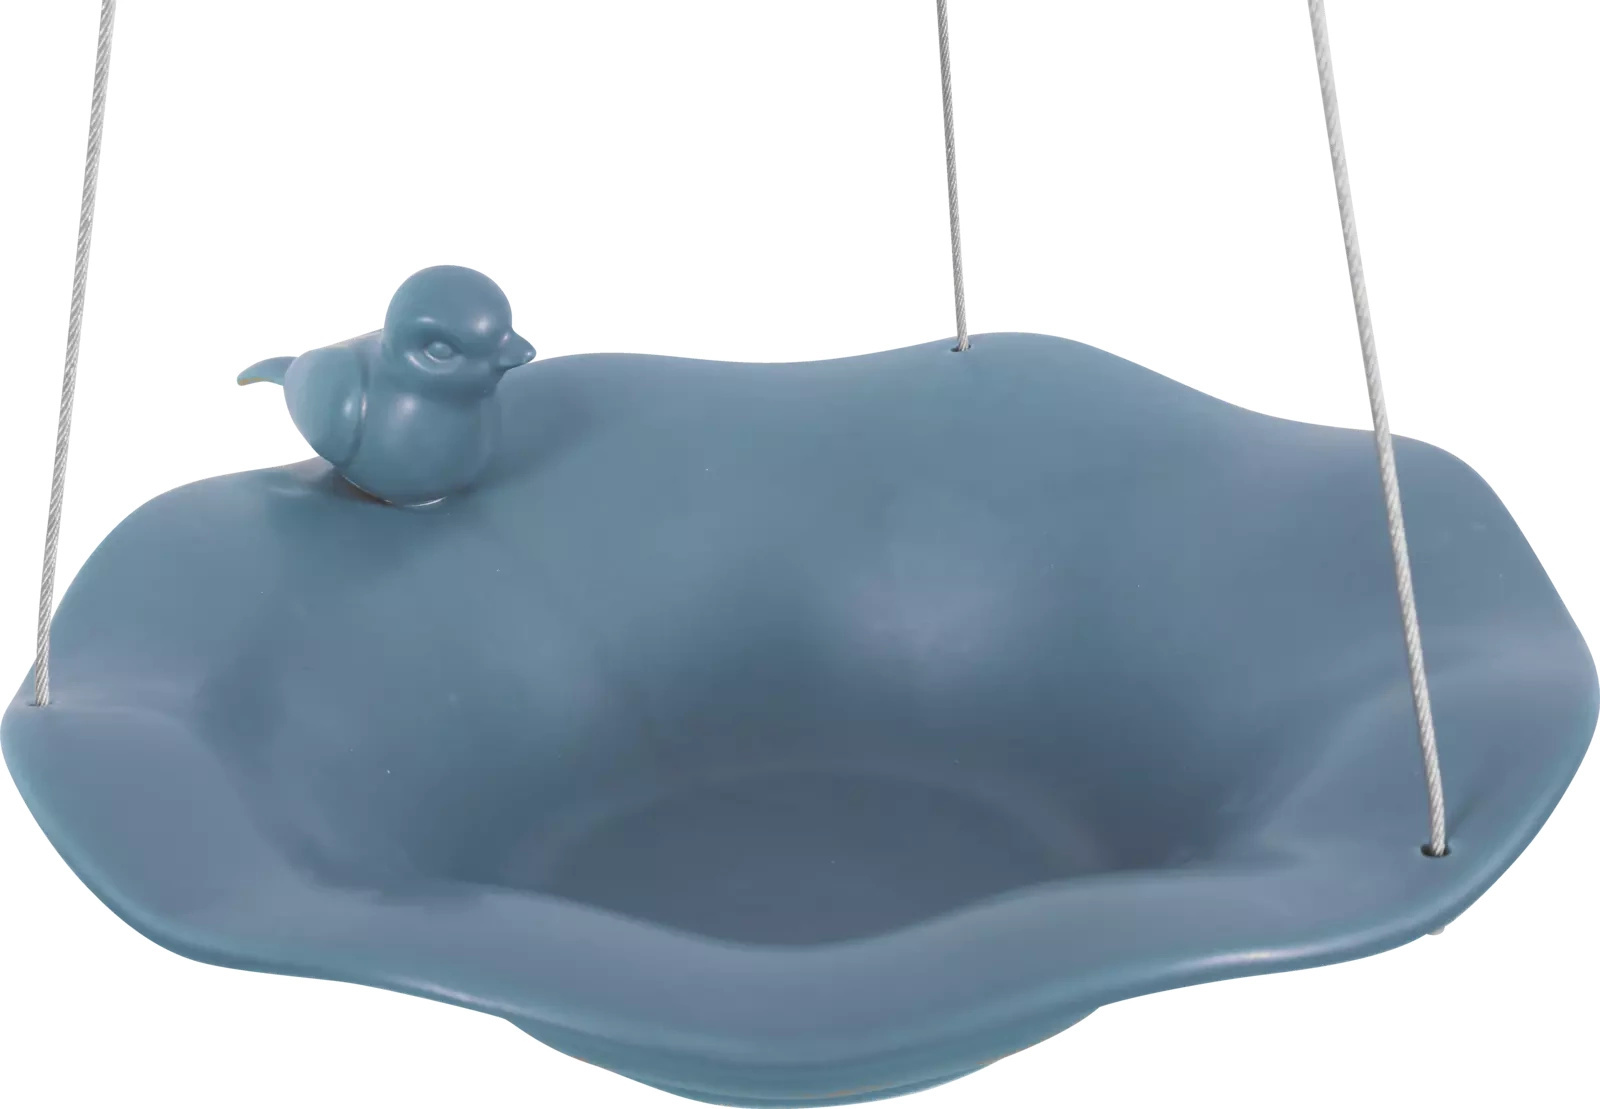 ZOLUX Poidło/basen ceramiczny z figurką ptaka kol. szaroniebieski